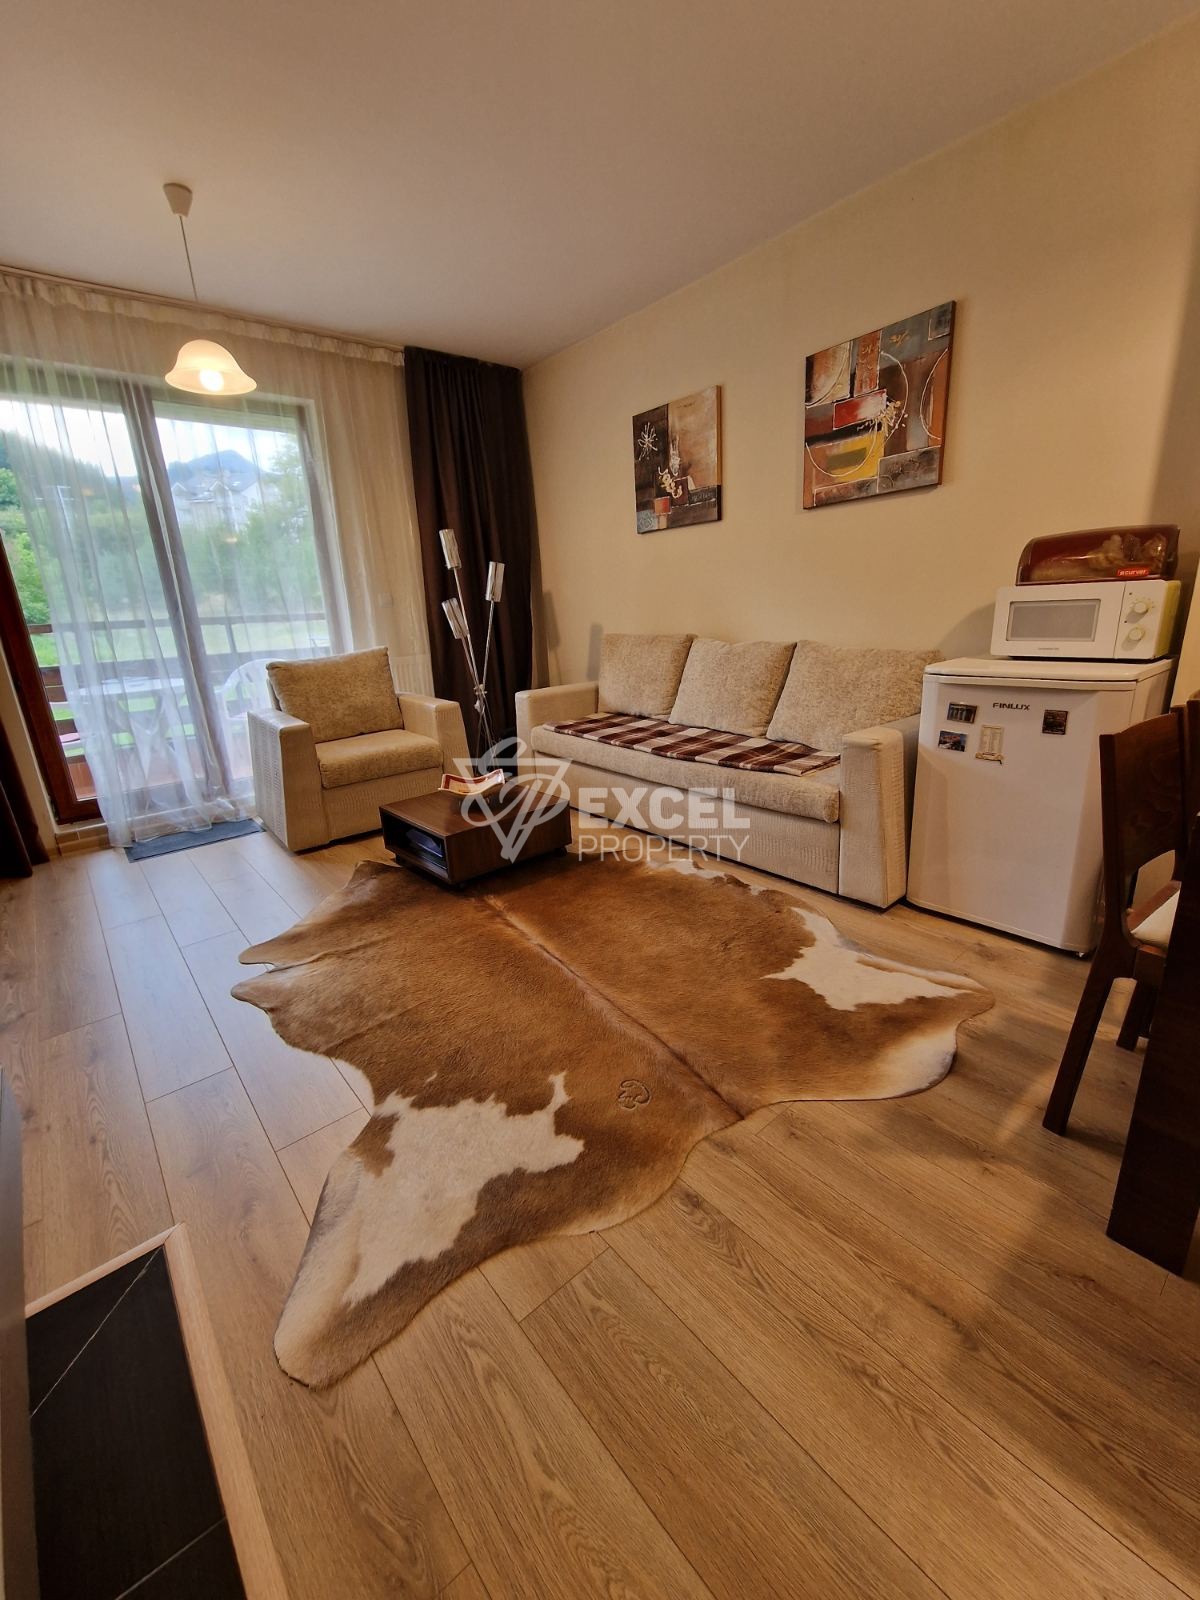 Южен двустаен апартамент за продажба в хотелската част на Green life, Банско